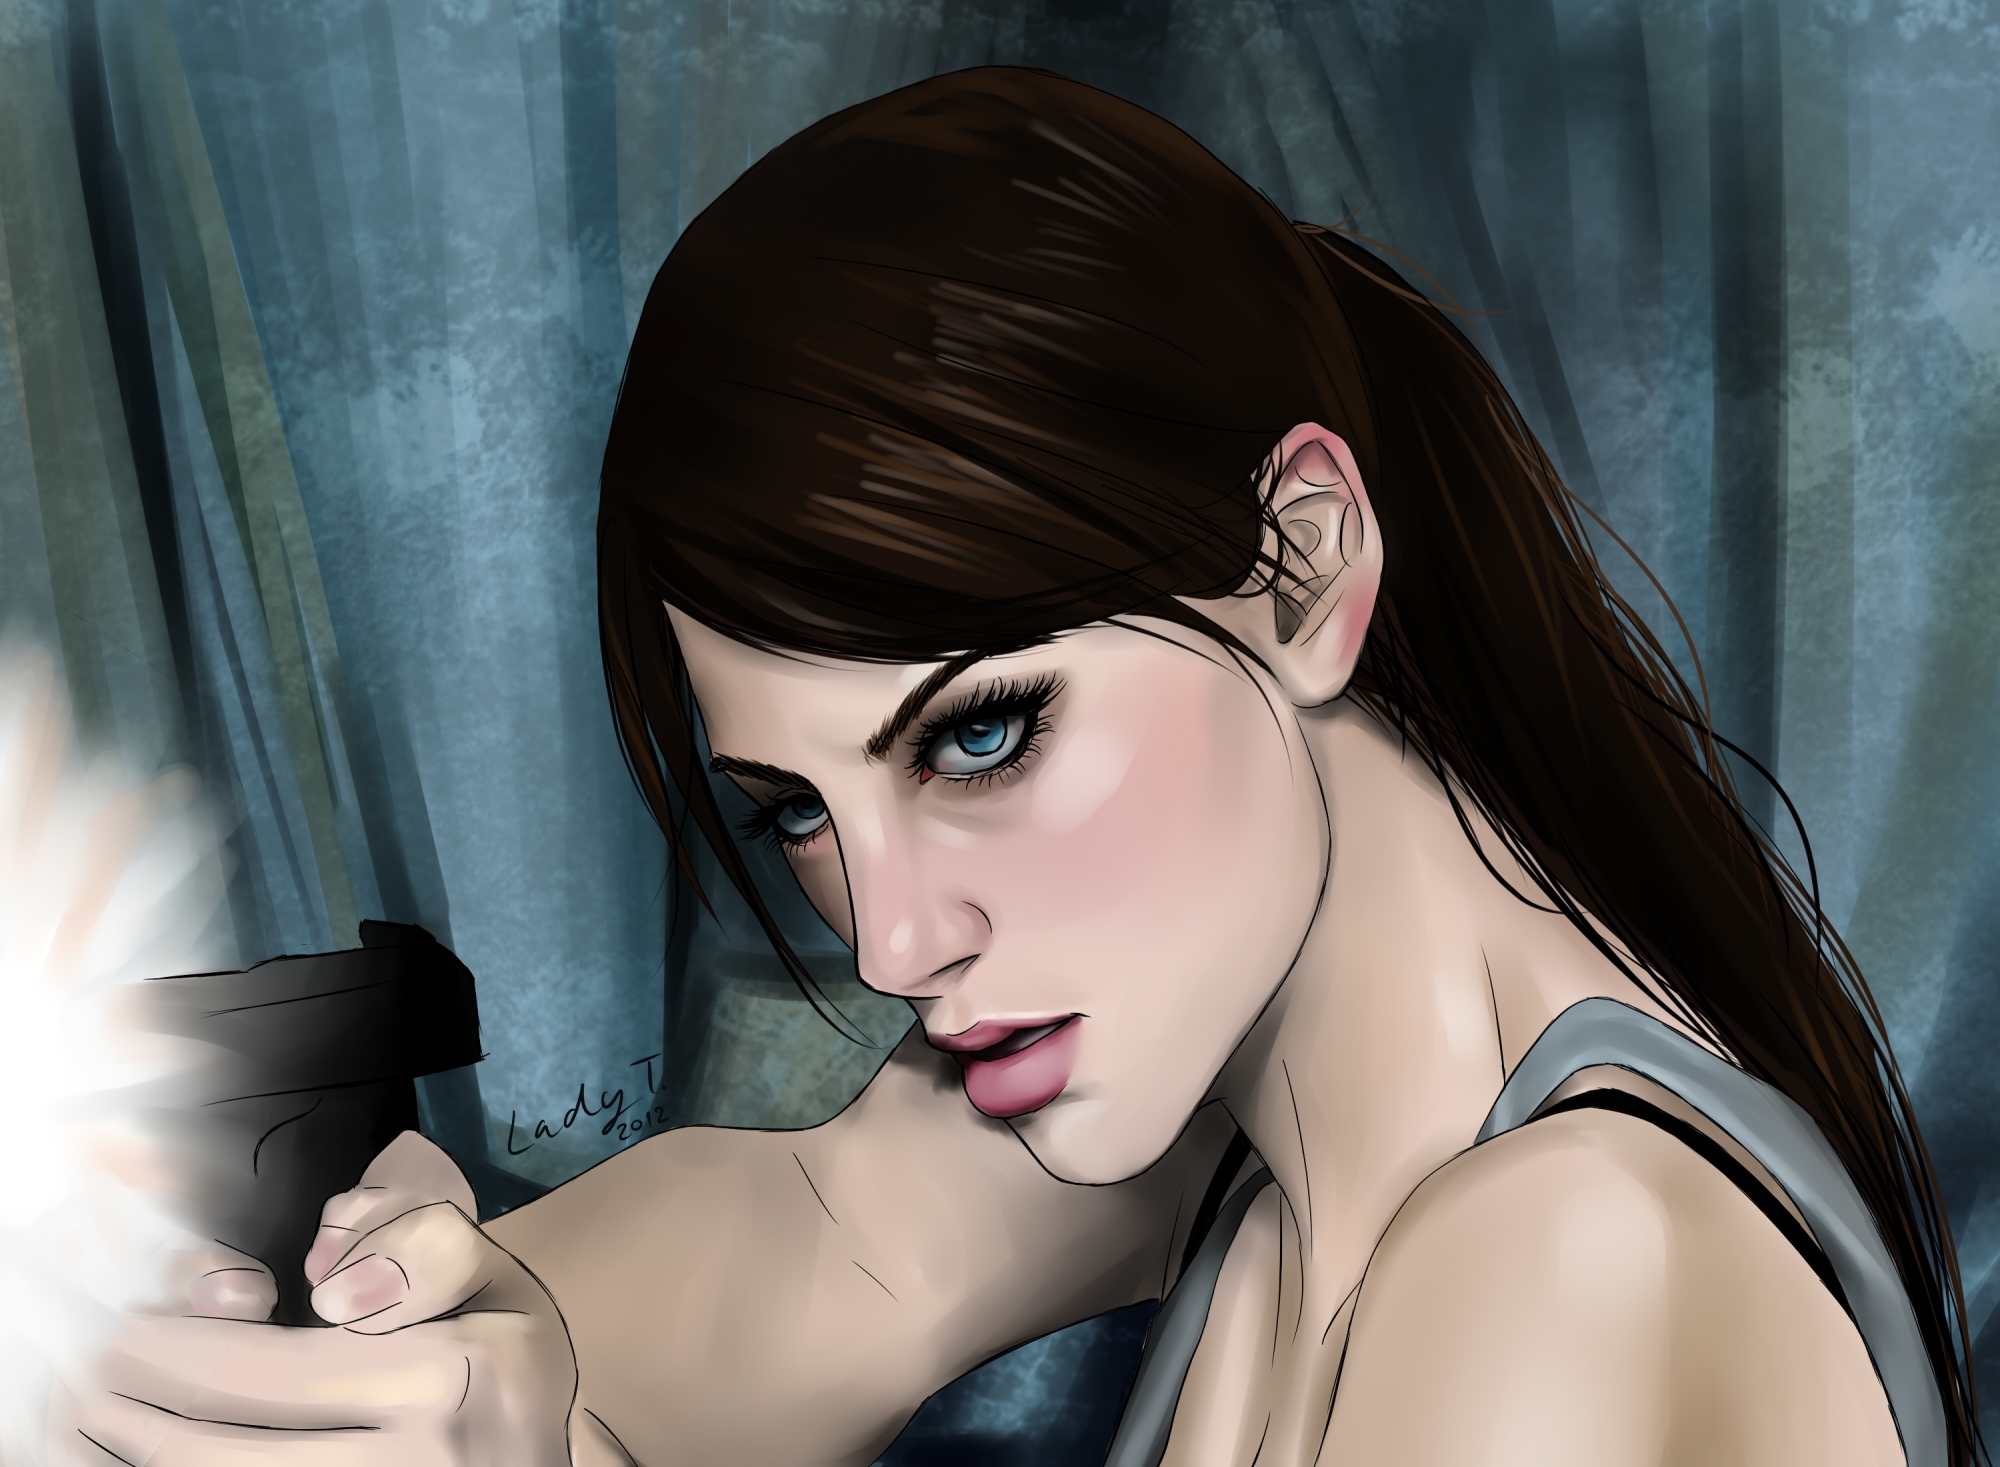 Blue Eyes Jill Valentine Video Game Art Artwork Video Game Girls Resident Evil Digital Painting Resi 2000x1467